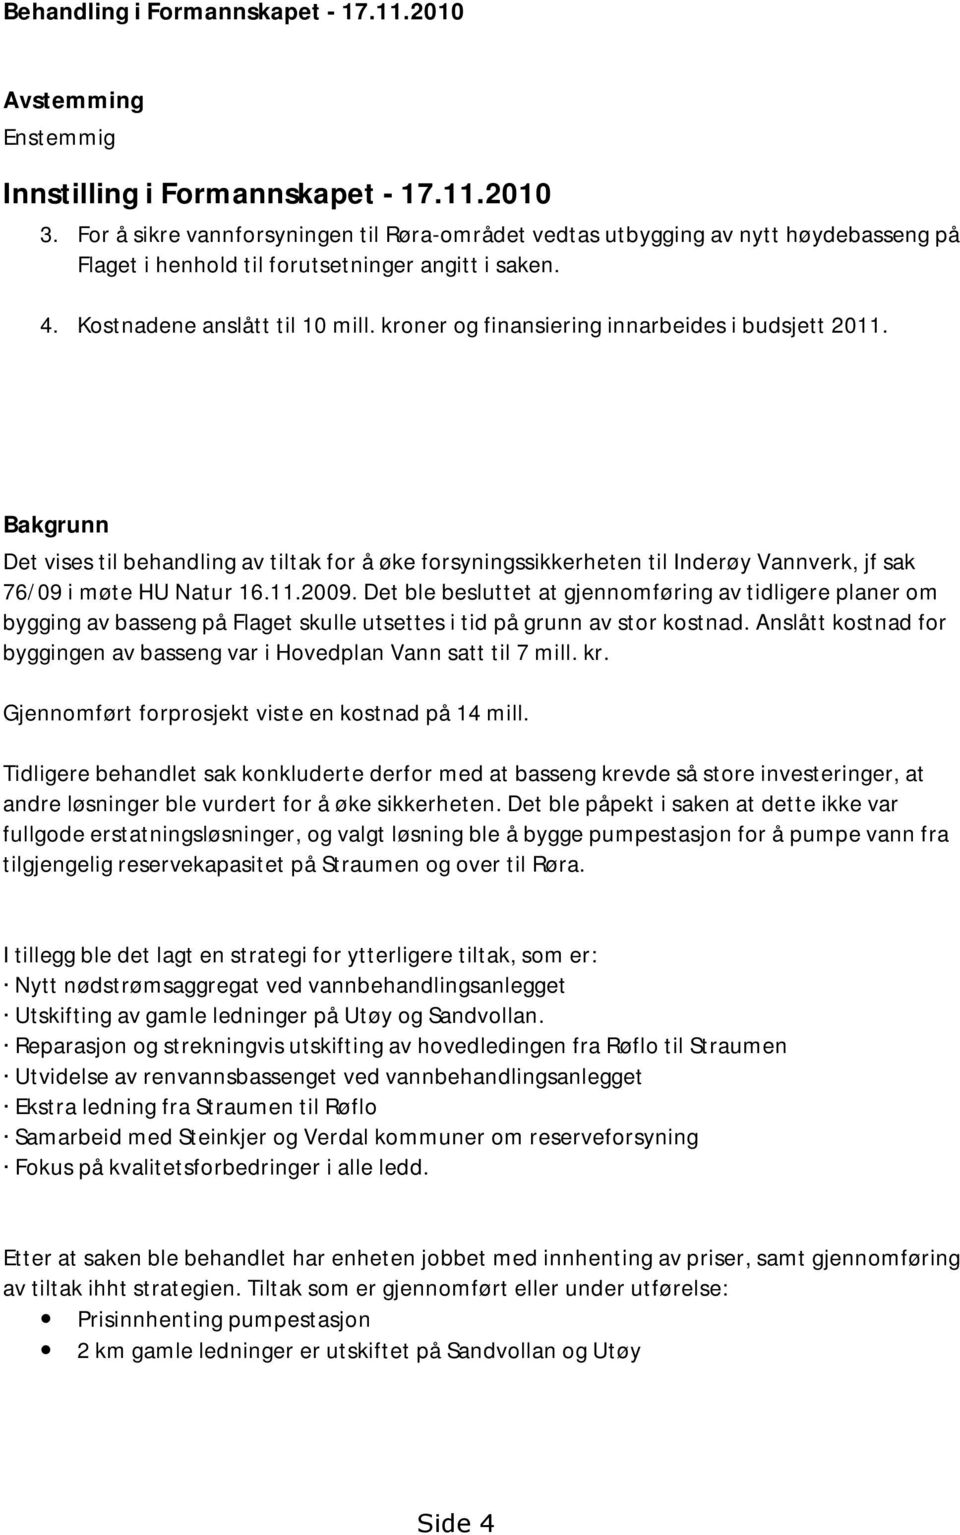 kroner og finansiering innarbeides i budsjett 2011. Bakgrunn Det vises til behandling av tiltak for å øke forsyningssikkerheten til Inderøy Vannverk, jf sak 76/09 i møte HU Natur 16.11.2009.